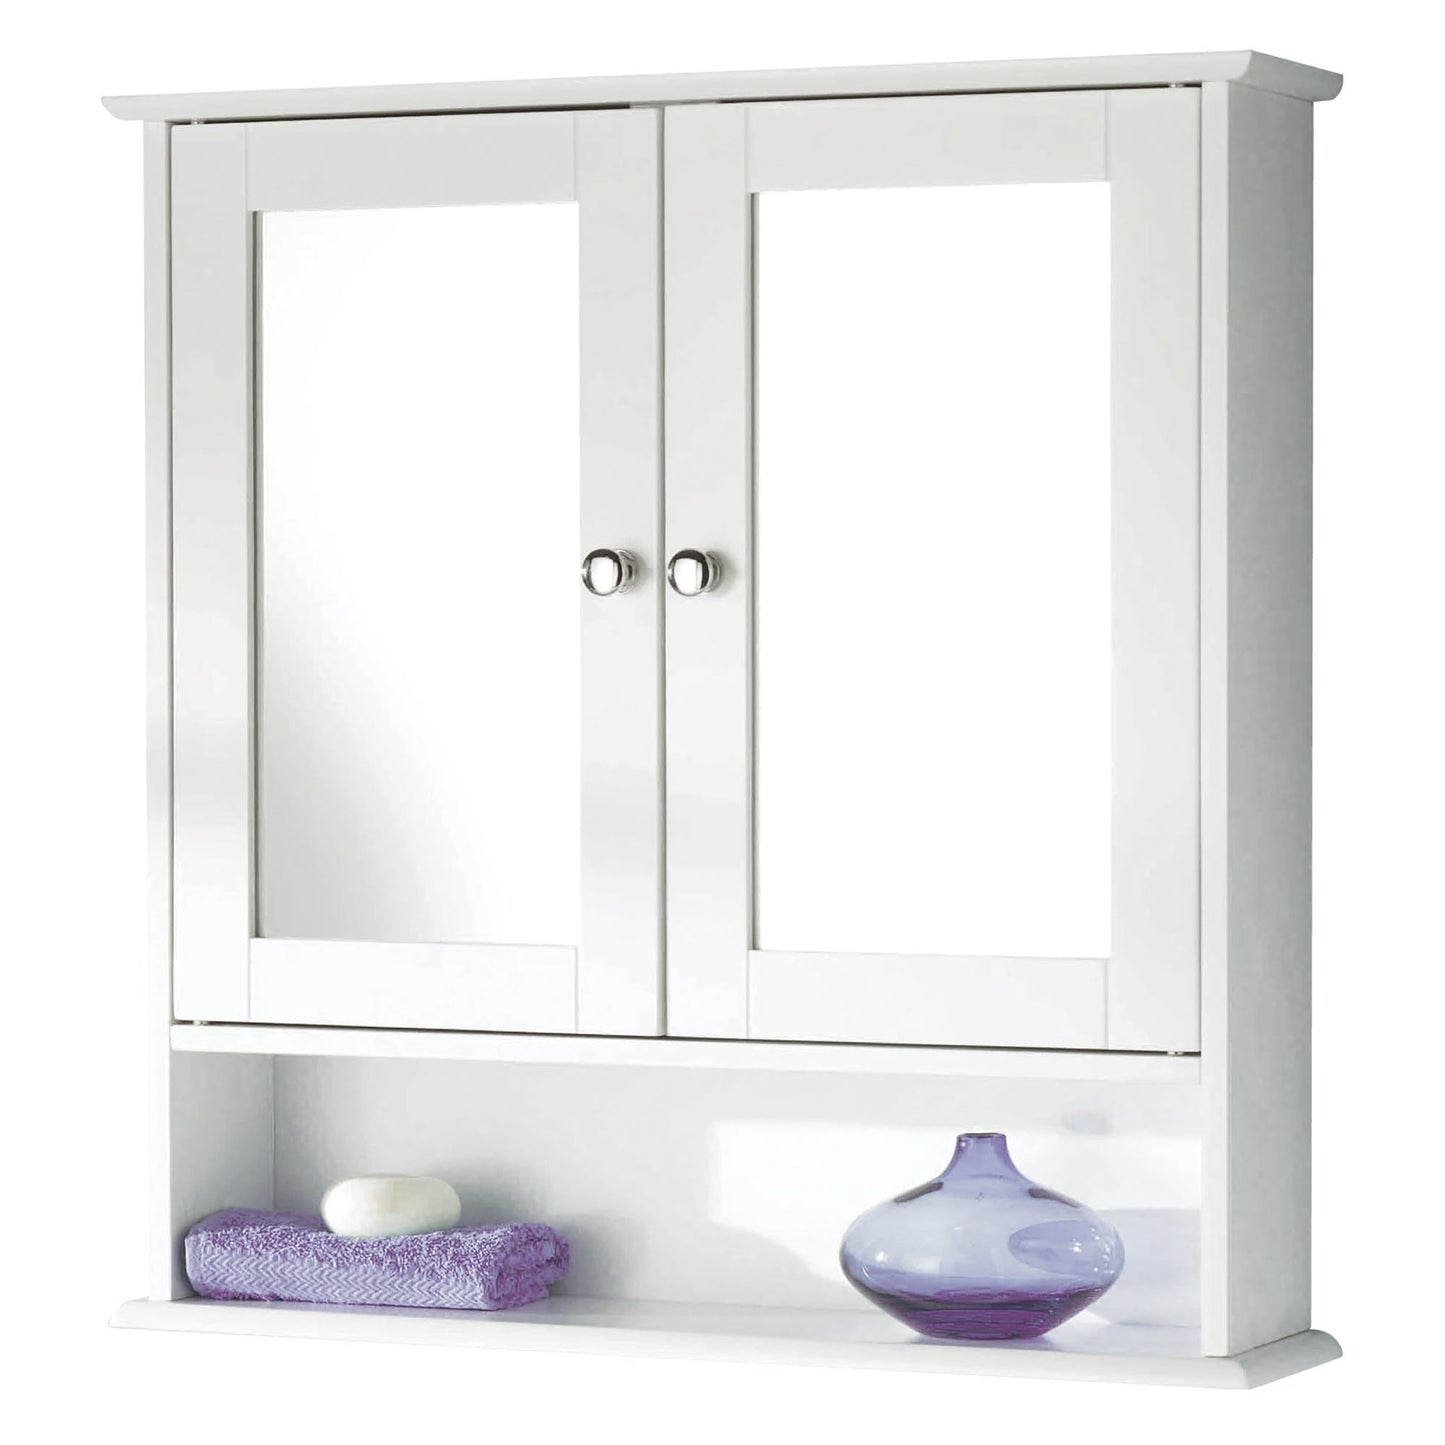 Lewis's 2 Door Mirror Cabinet Home Living Essentials Bathroom Storage